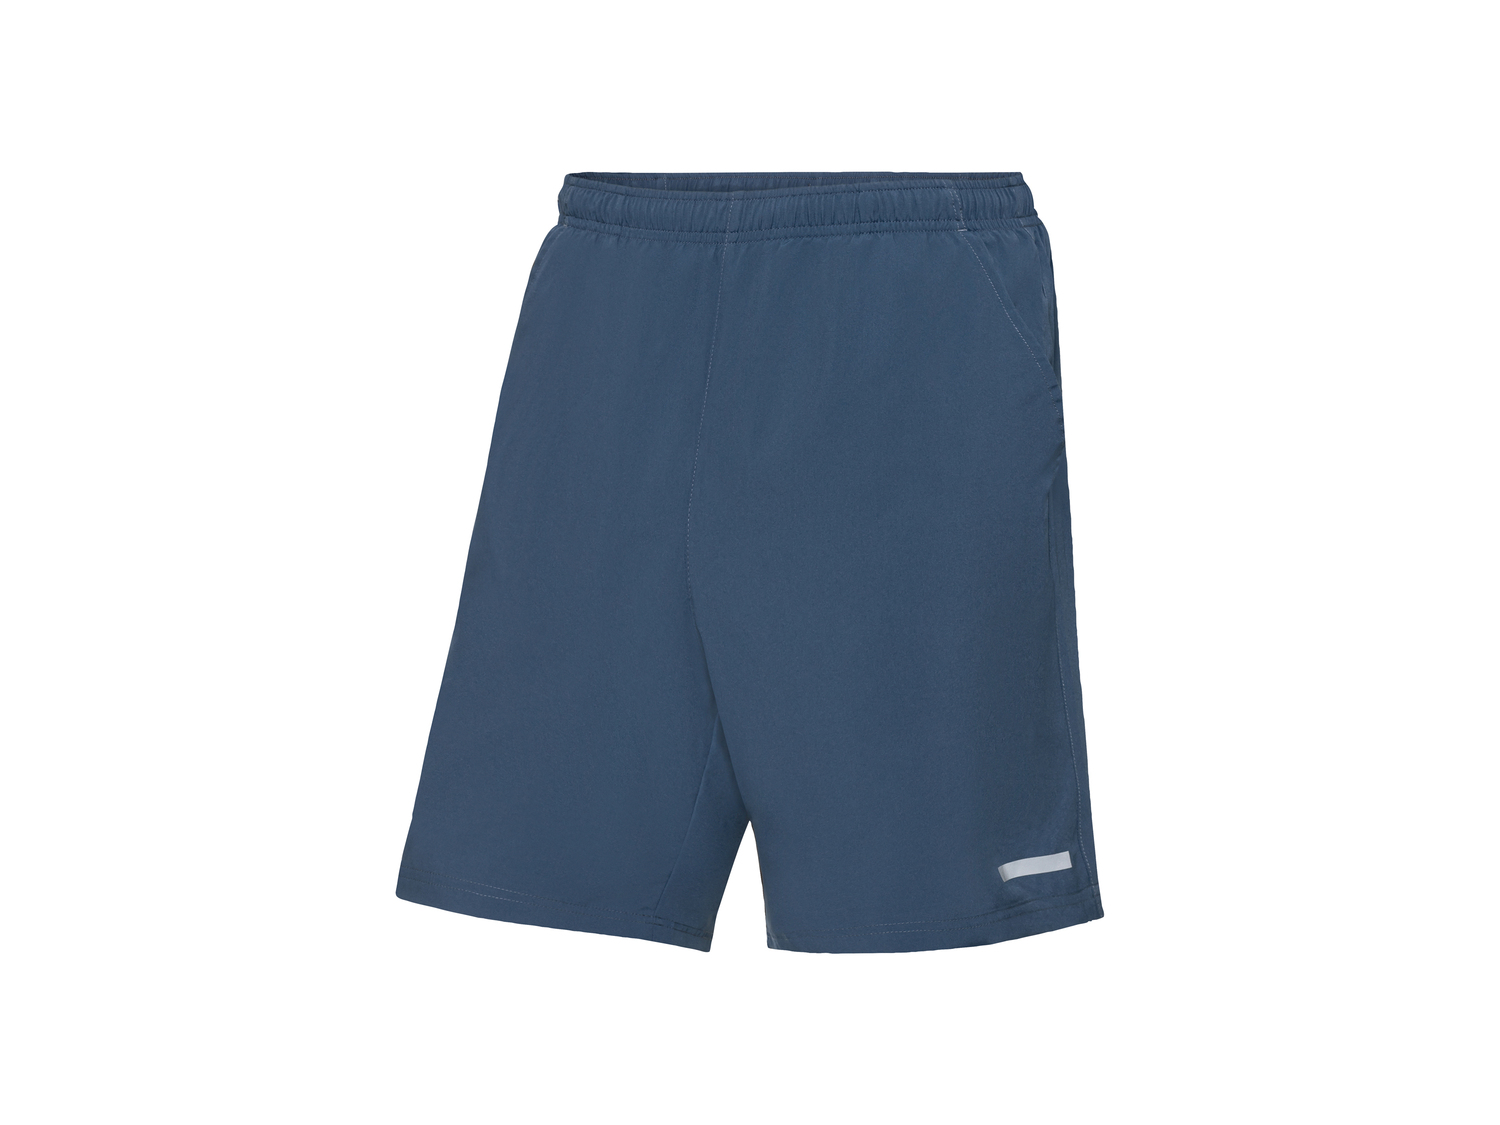 Shorts sportivi da uomo Crivit, prezzo 6.99 &#8364; 
Misure: S-XL 
- Prodotti ...